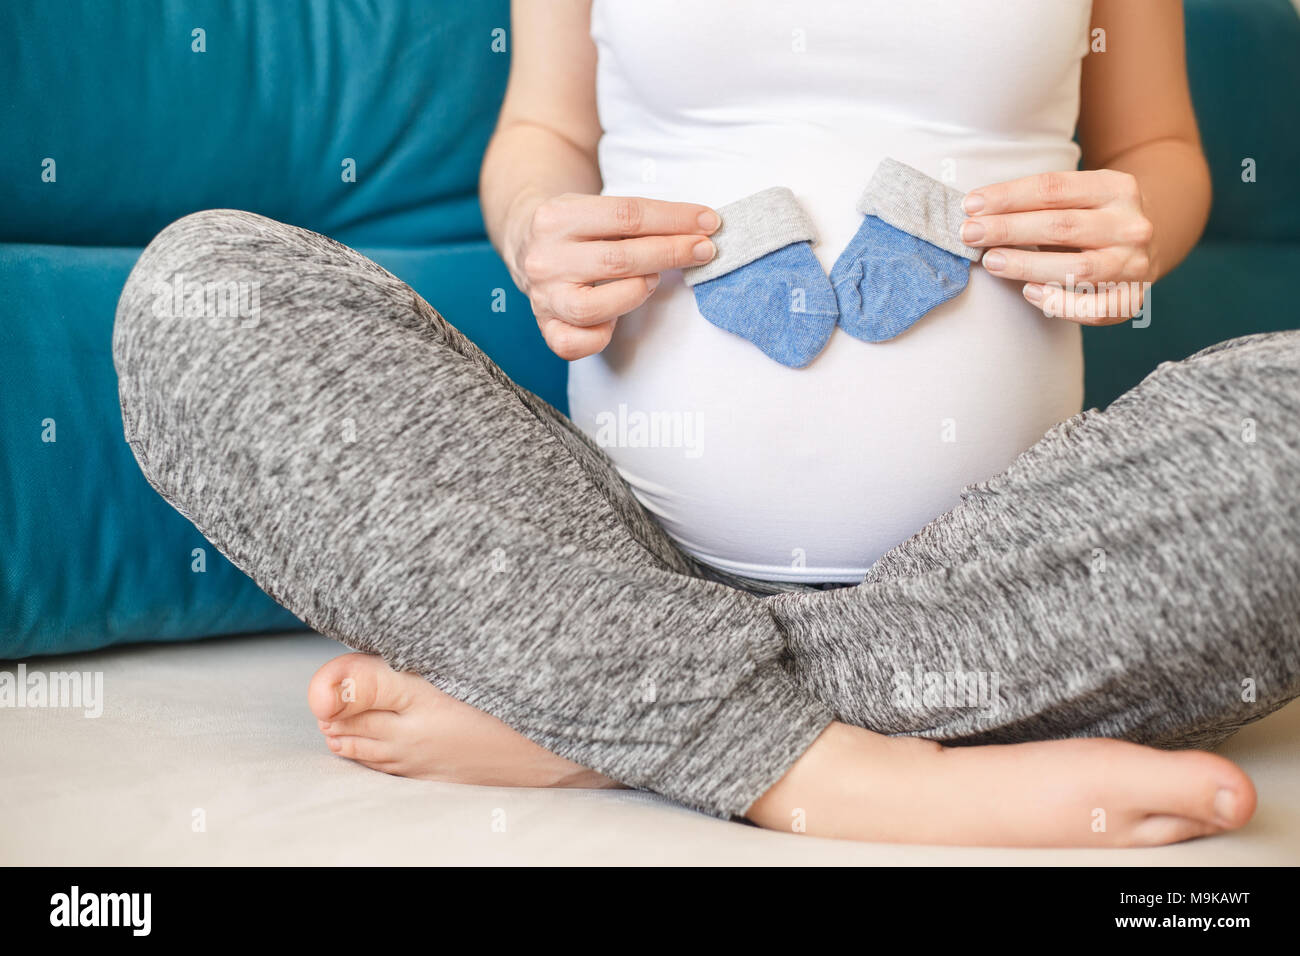 Closeup schwangere Frau mit blauen Socken auf ihren Bauch. Die werdende Mutter. Schwangerschaft, Menschen, Erwartung von baby boy Konzept Stockfoto